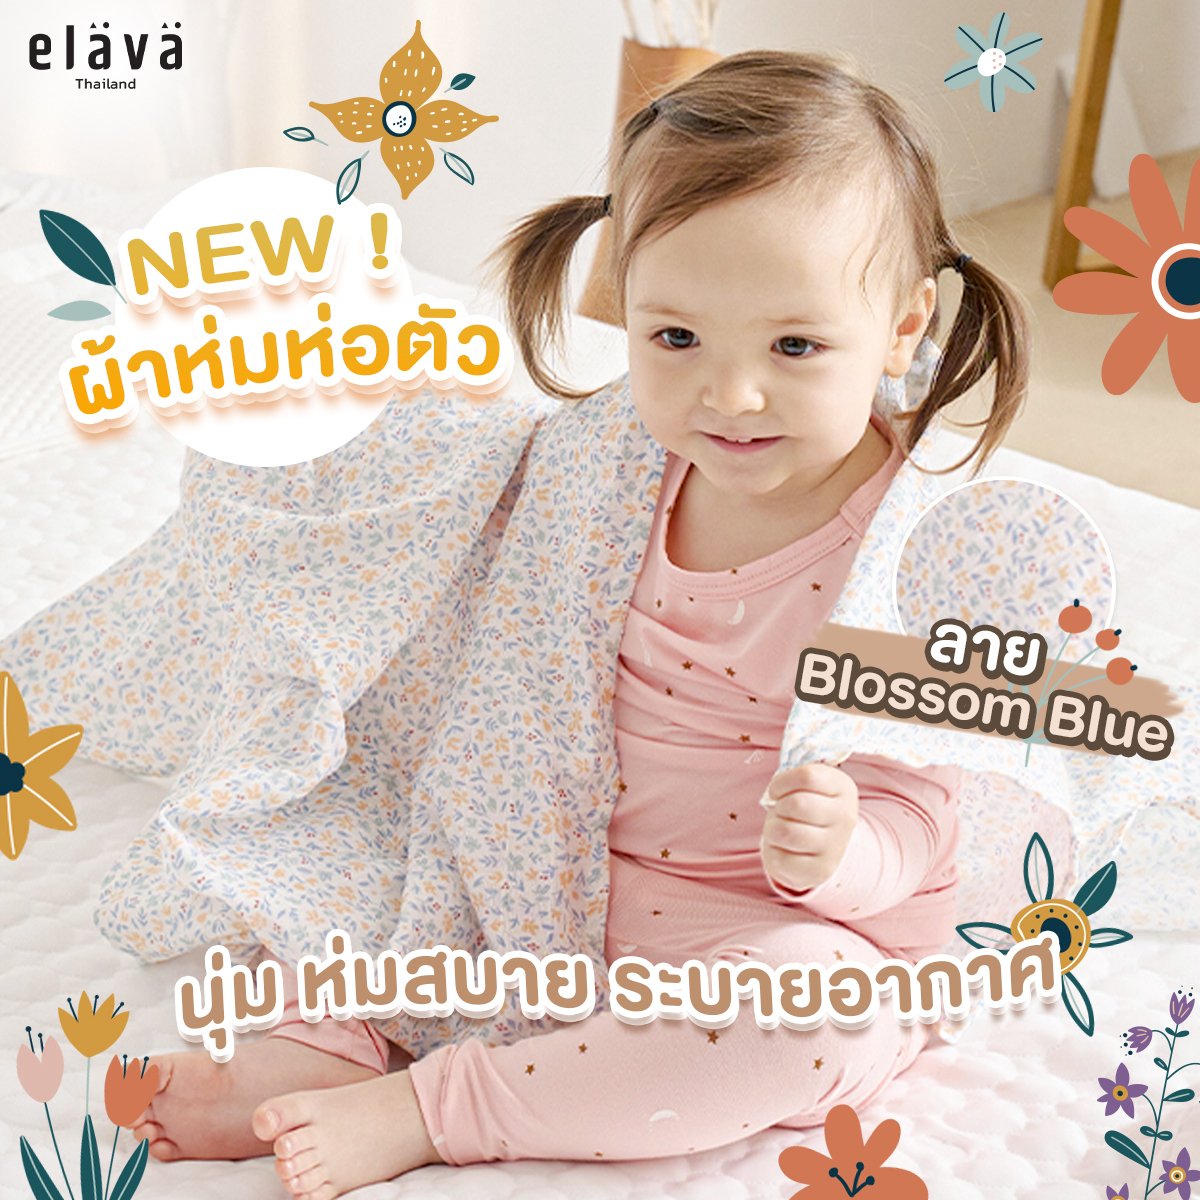 ELAVA ผ้าห่มห่อตัวเด็ก (0m+)